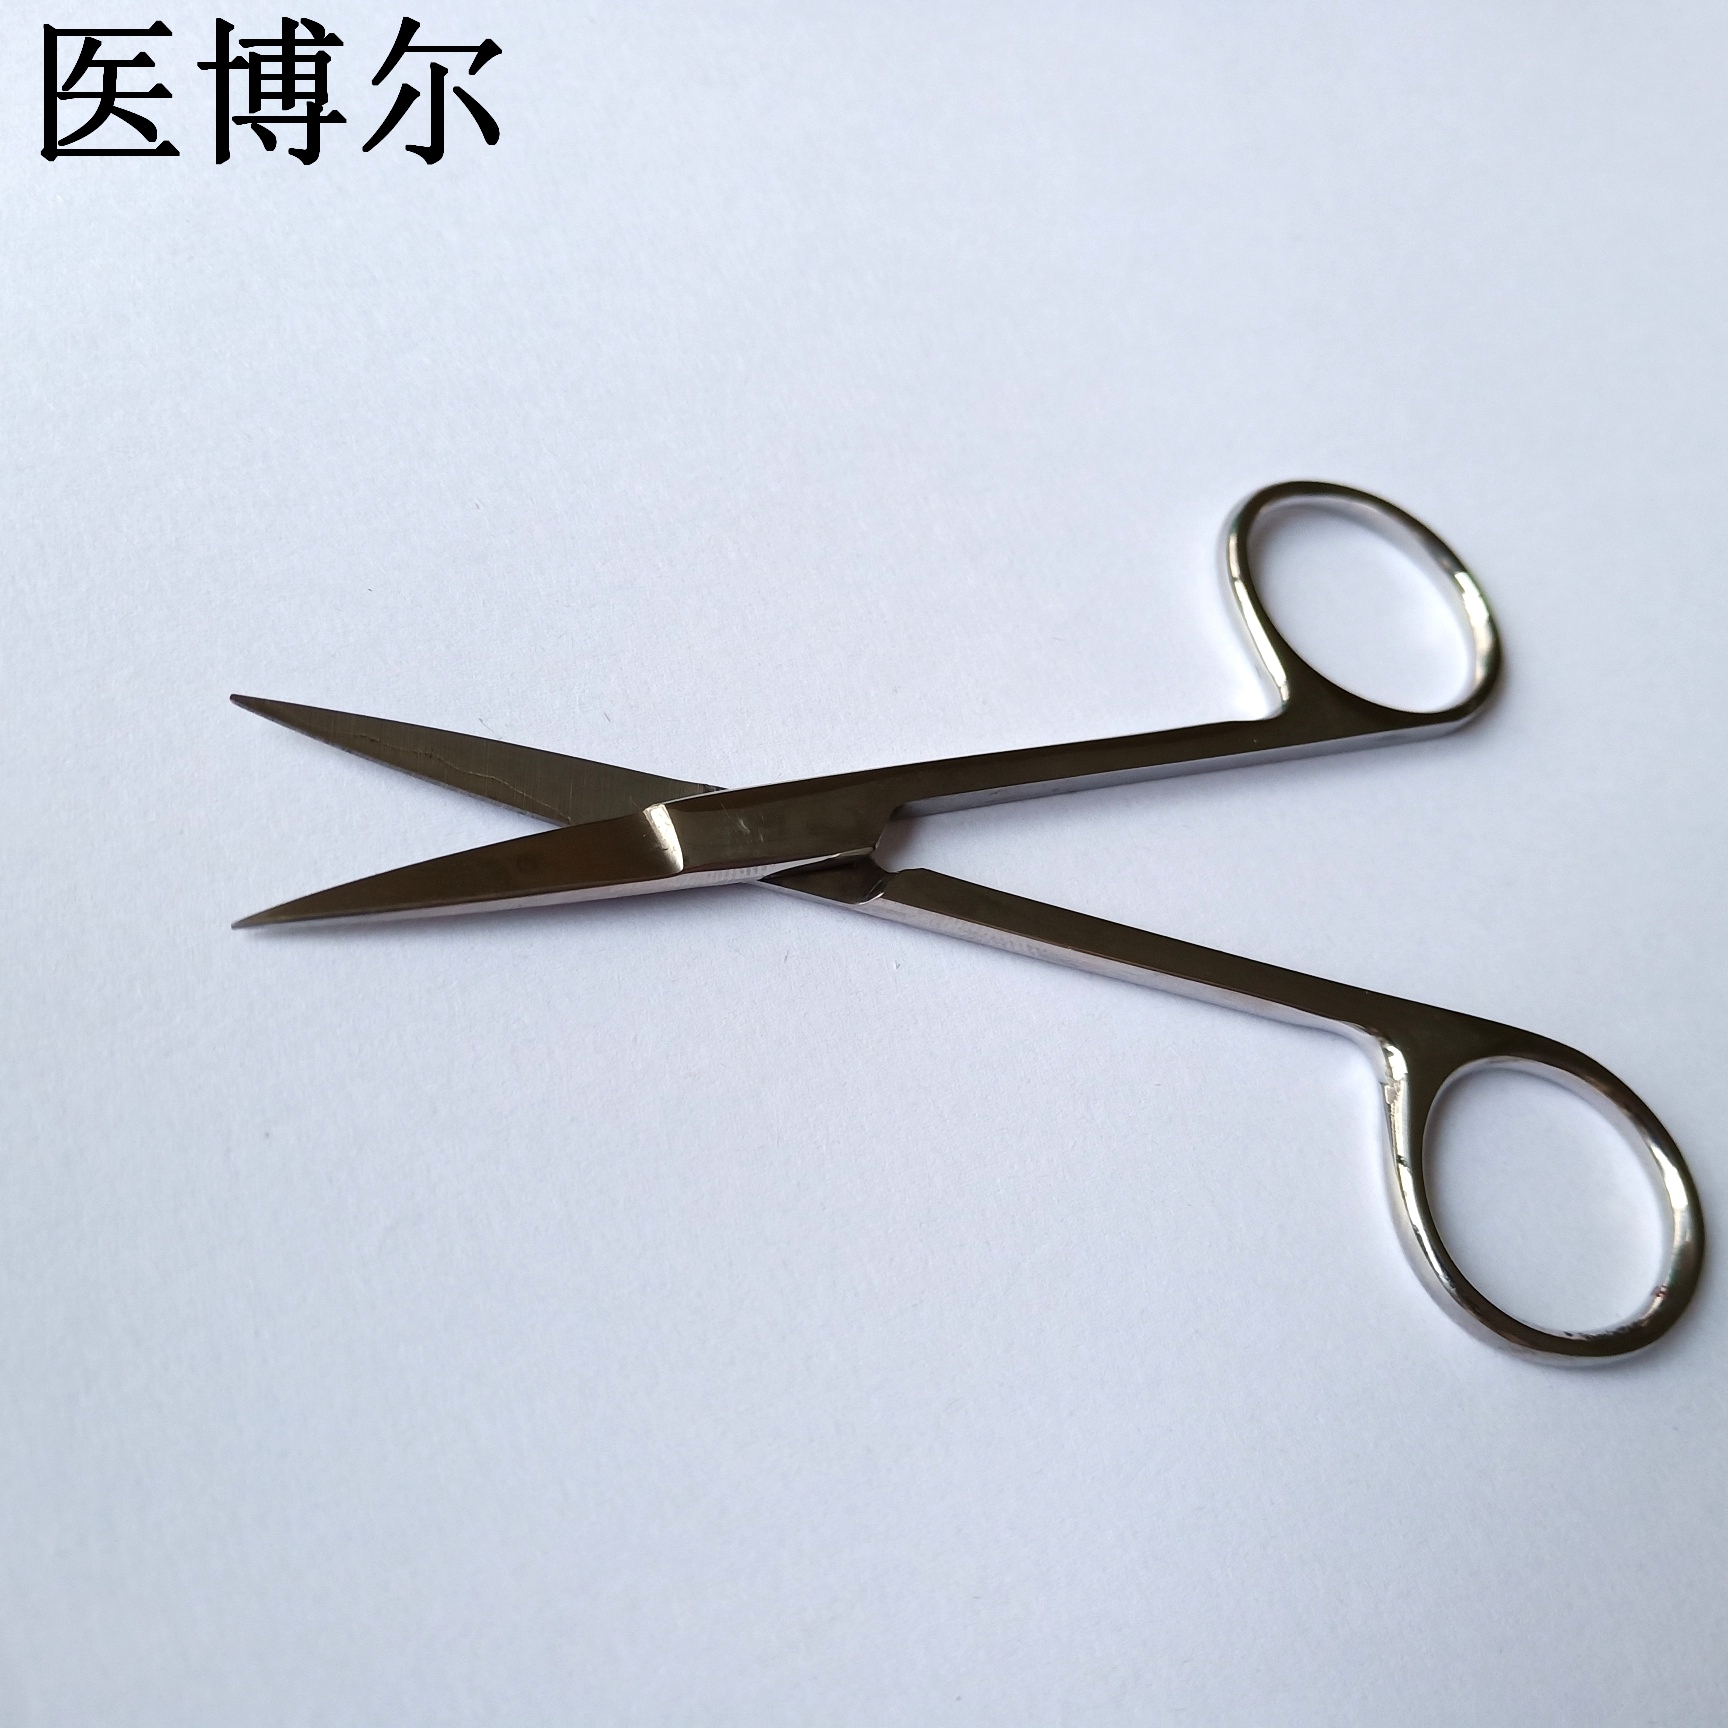 11.5cm板材剪刀 (3)_看图王.jpg